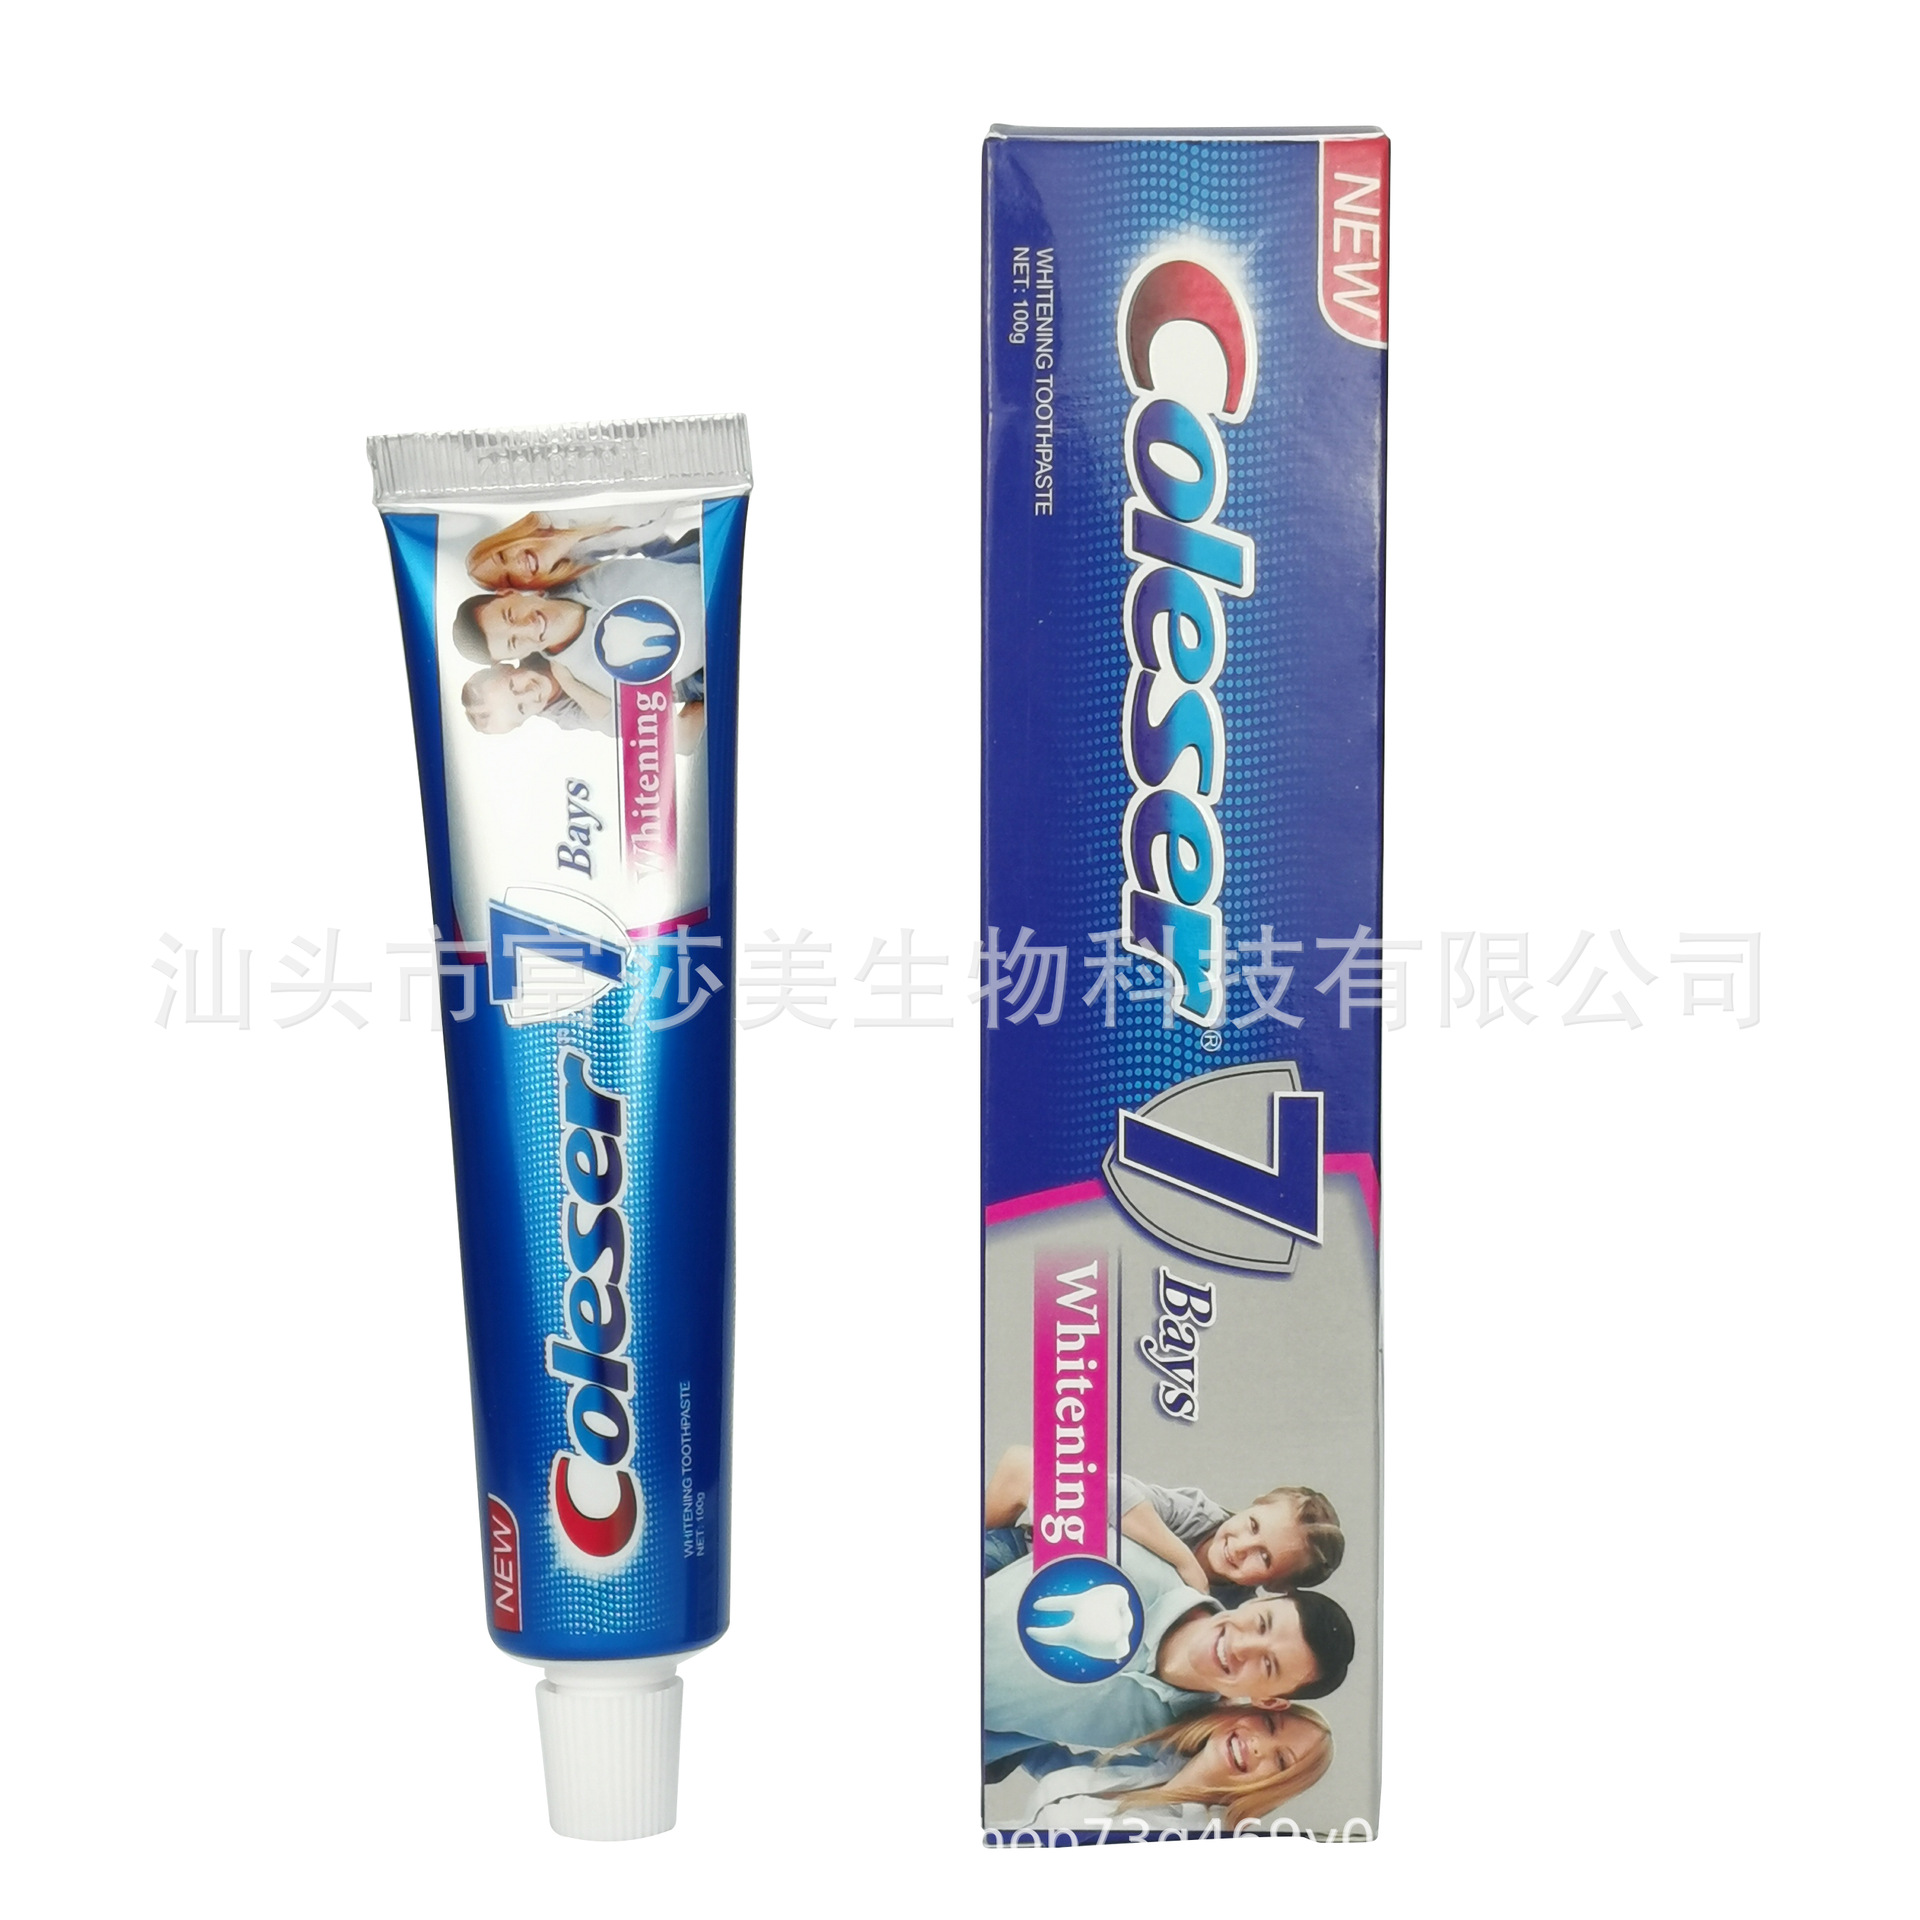 现货厂家100g跨境外贸全英文非洲中东牙膏toothpaste coleser图